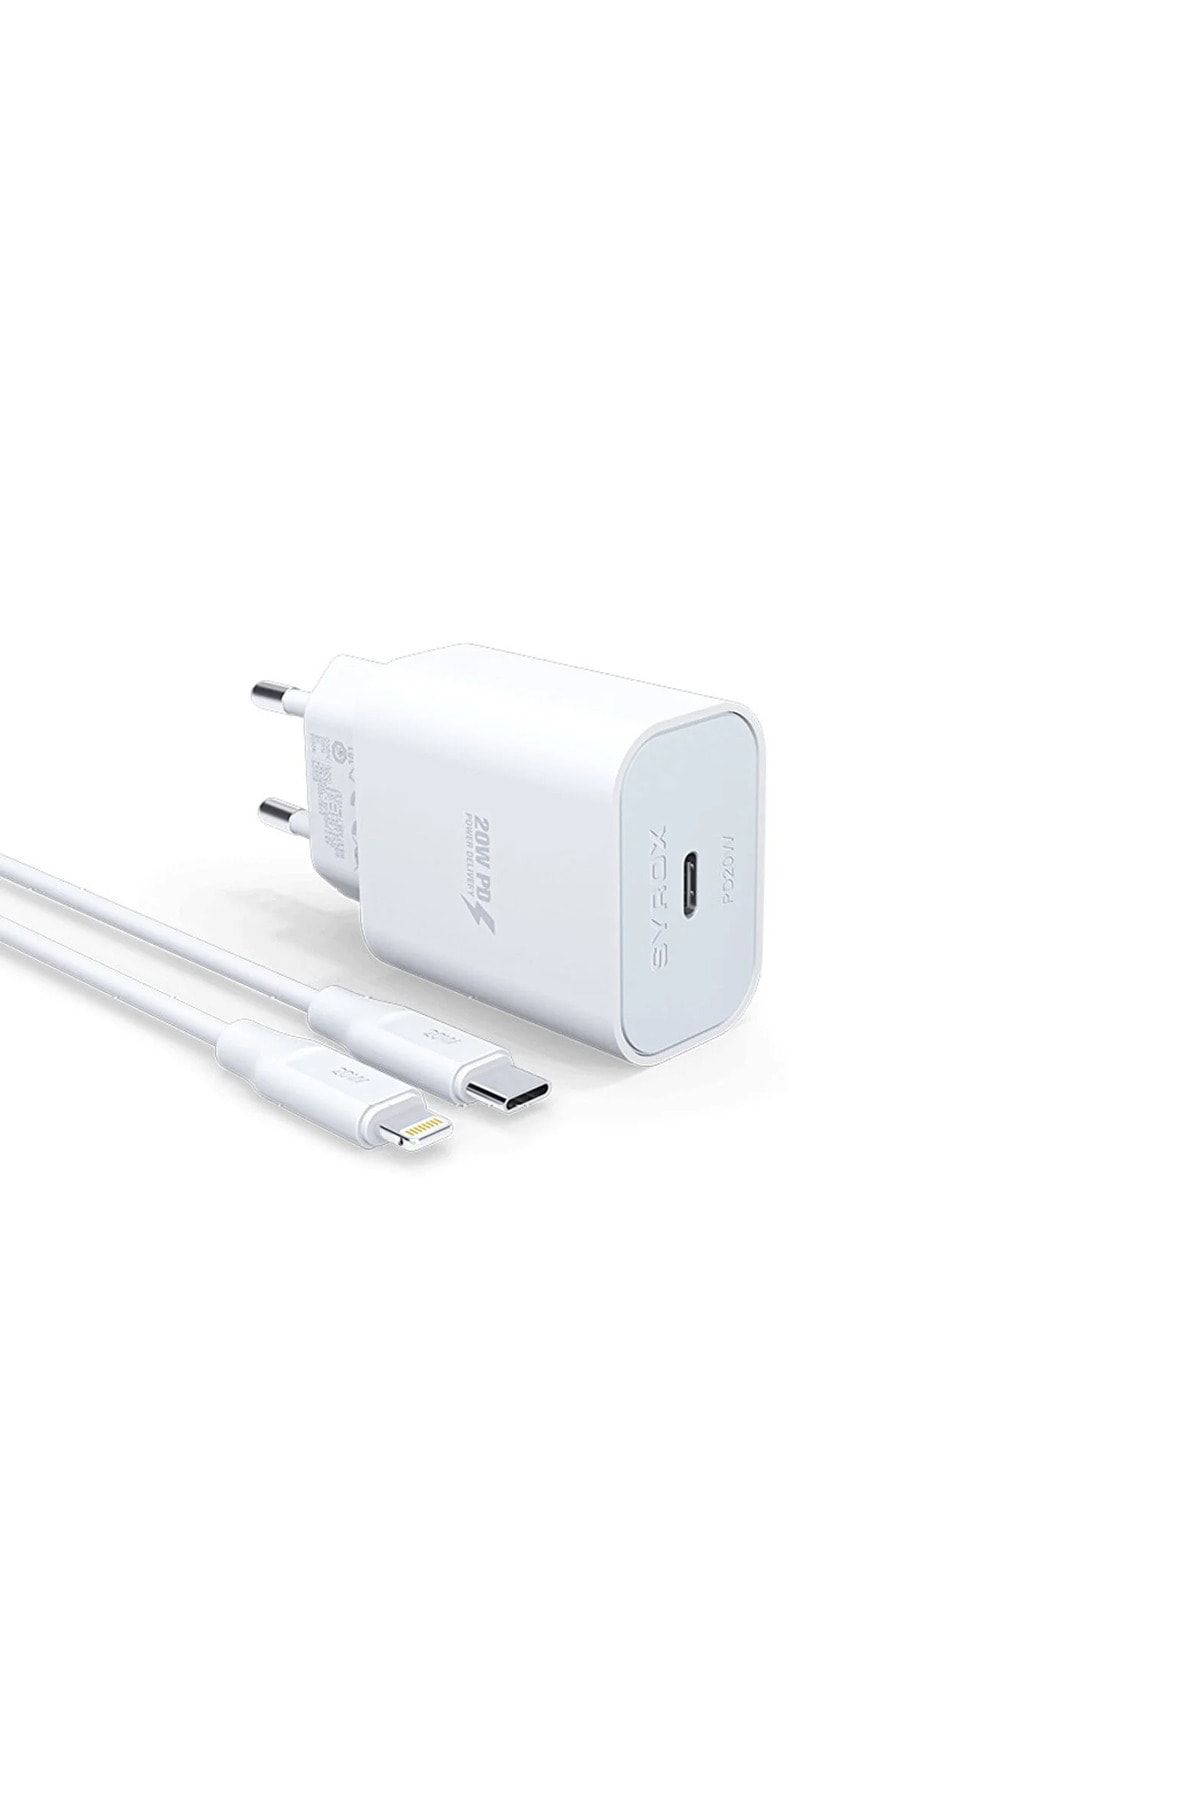 Syrox Apple Iphone 7 Plus Uyumlu Hızlı Şarj Cihazı Lightning 20w Şarj Aleti Seti